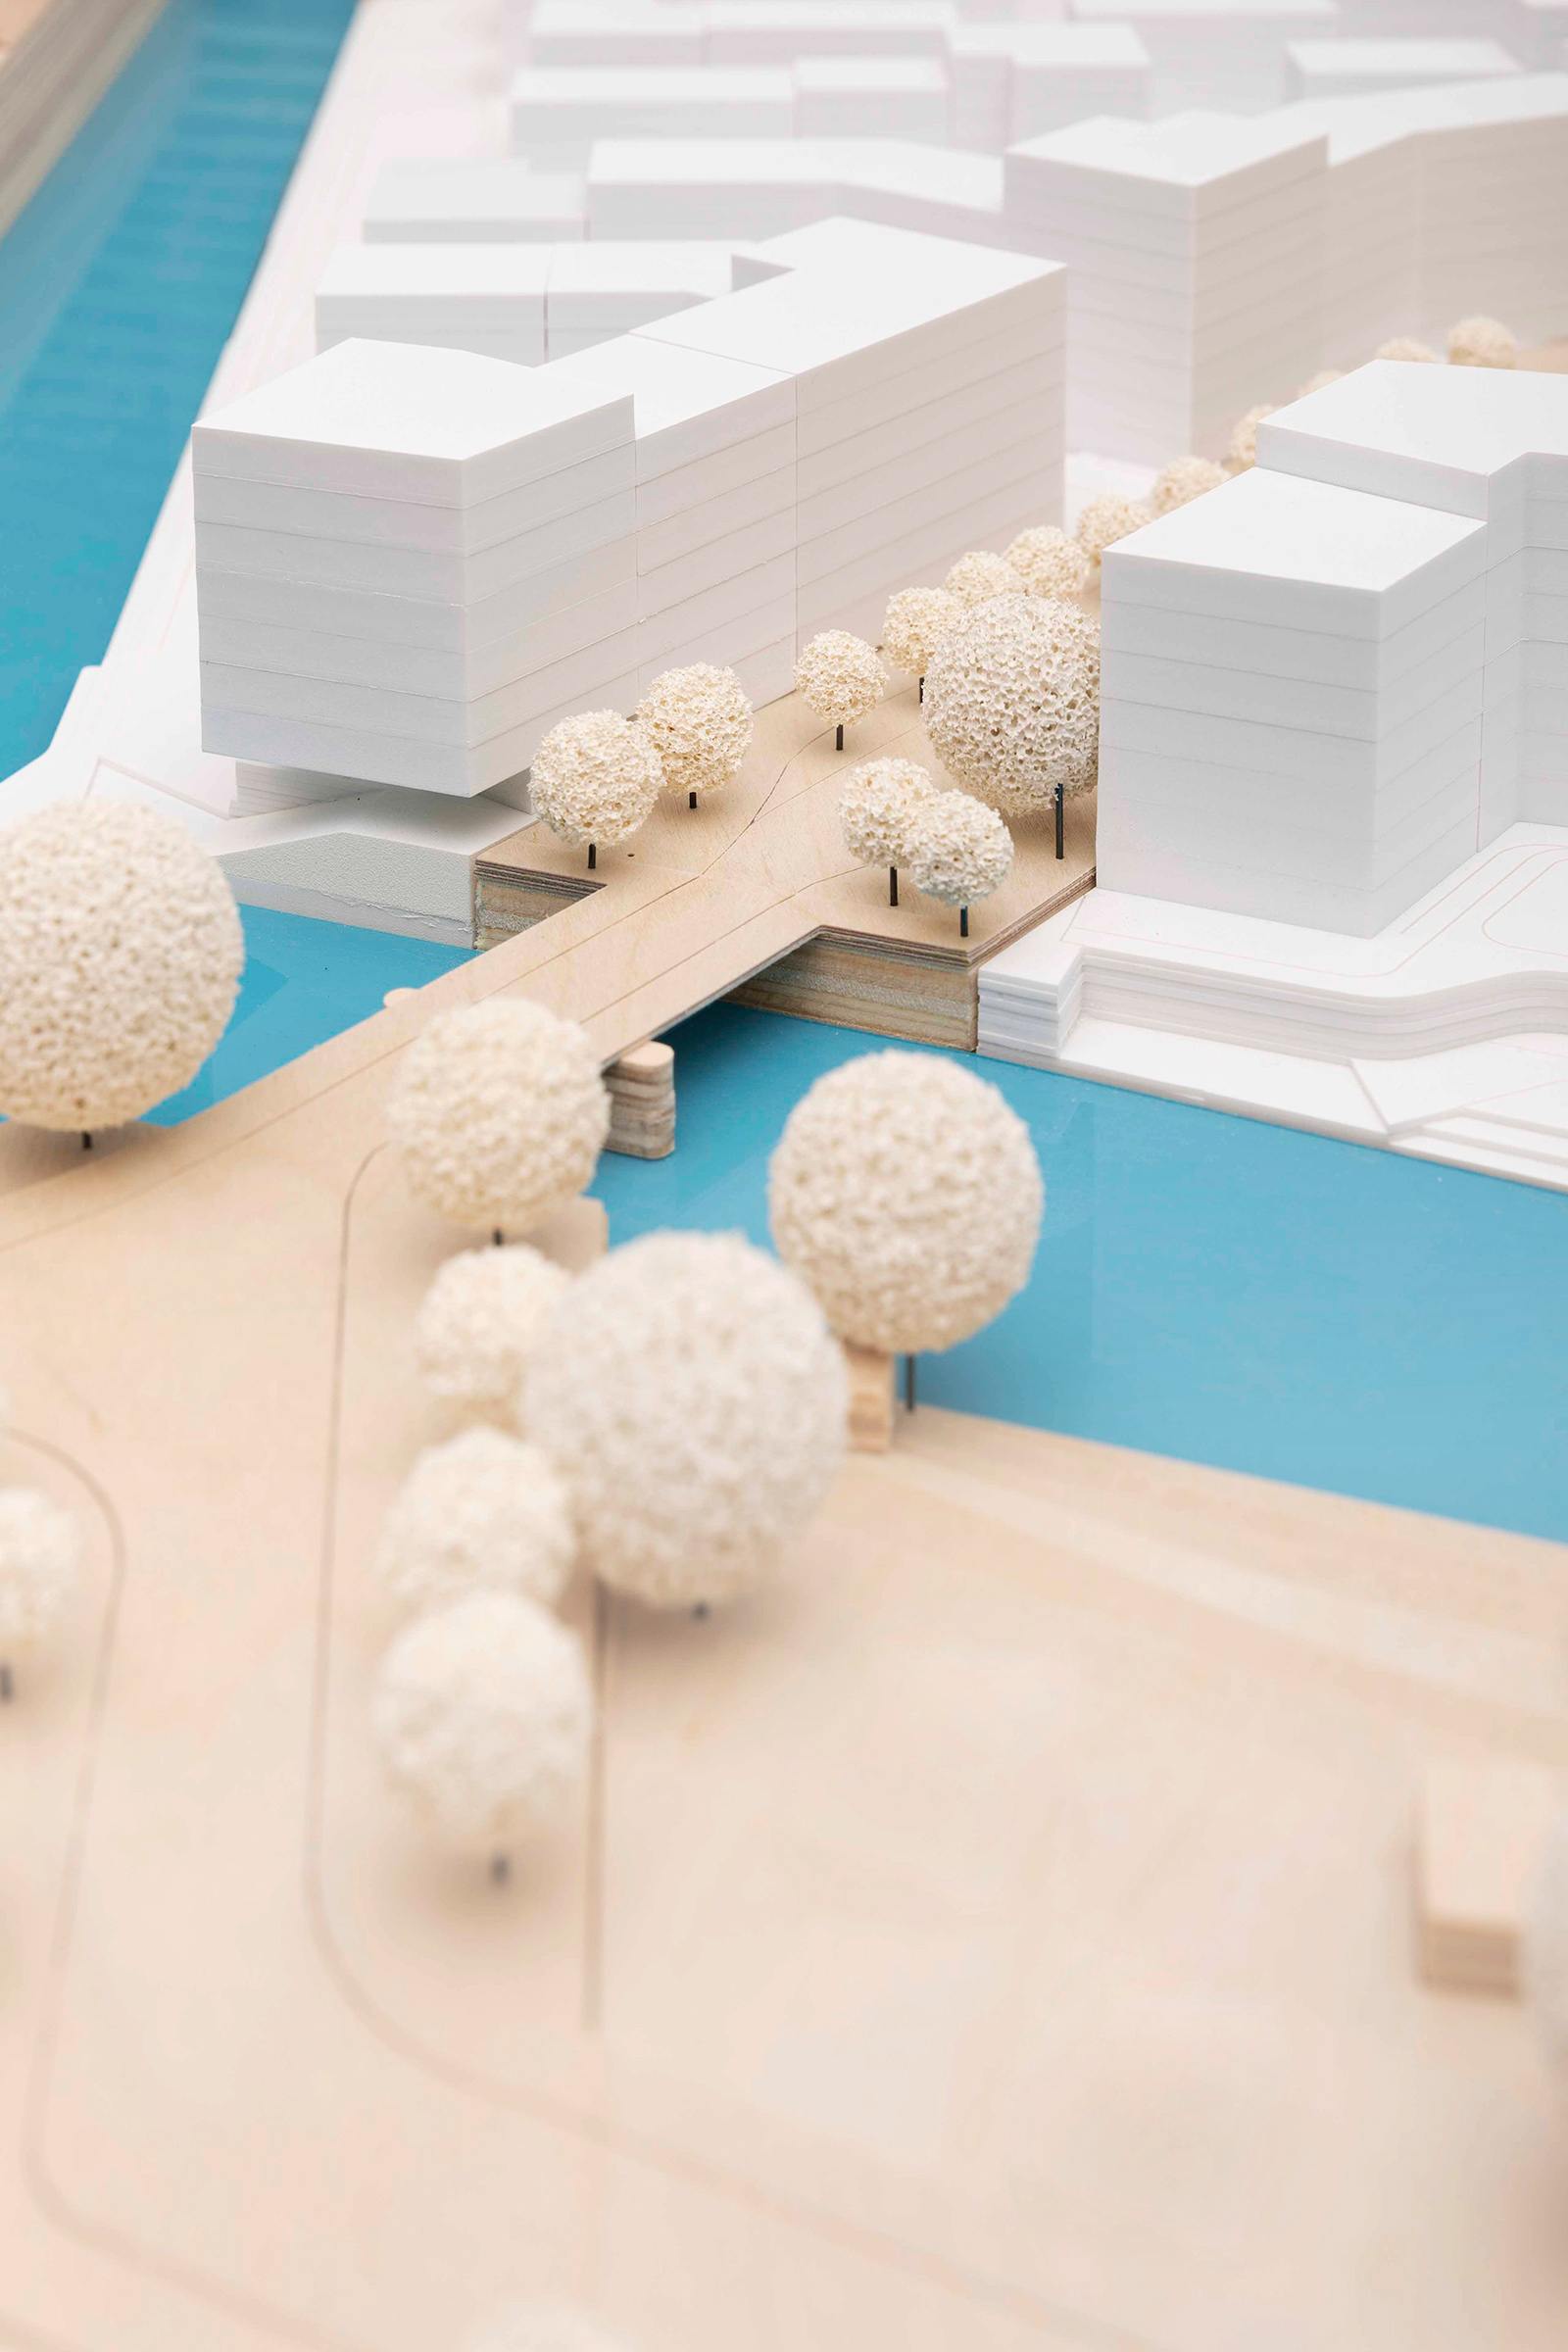 Modell aus dem StadtPlan-Artikel "Nah am Wasser gebaut"